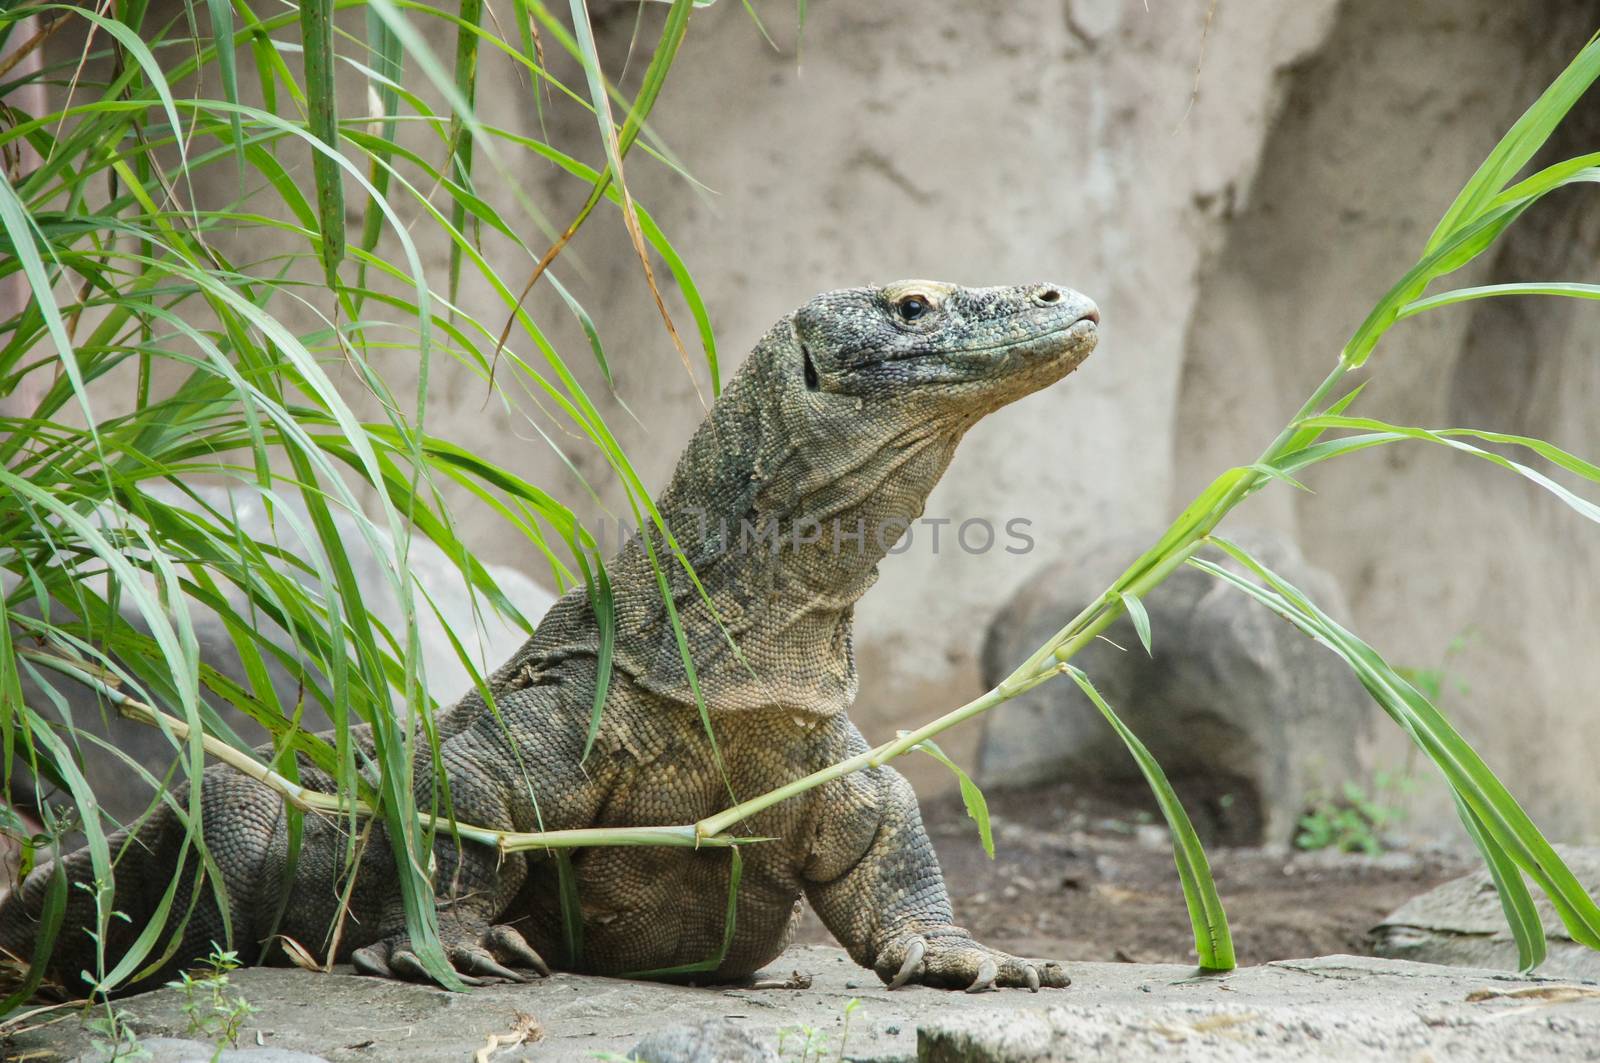 Дракон Комодо Варан-крупнейшая ящерица komodoensis жизни в мире. Индонезия. by olgagordeeva